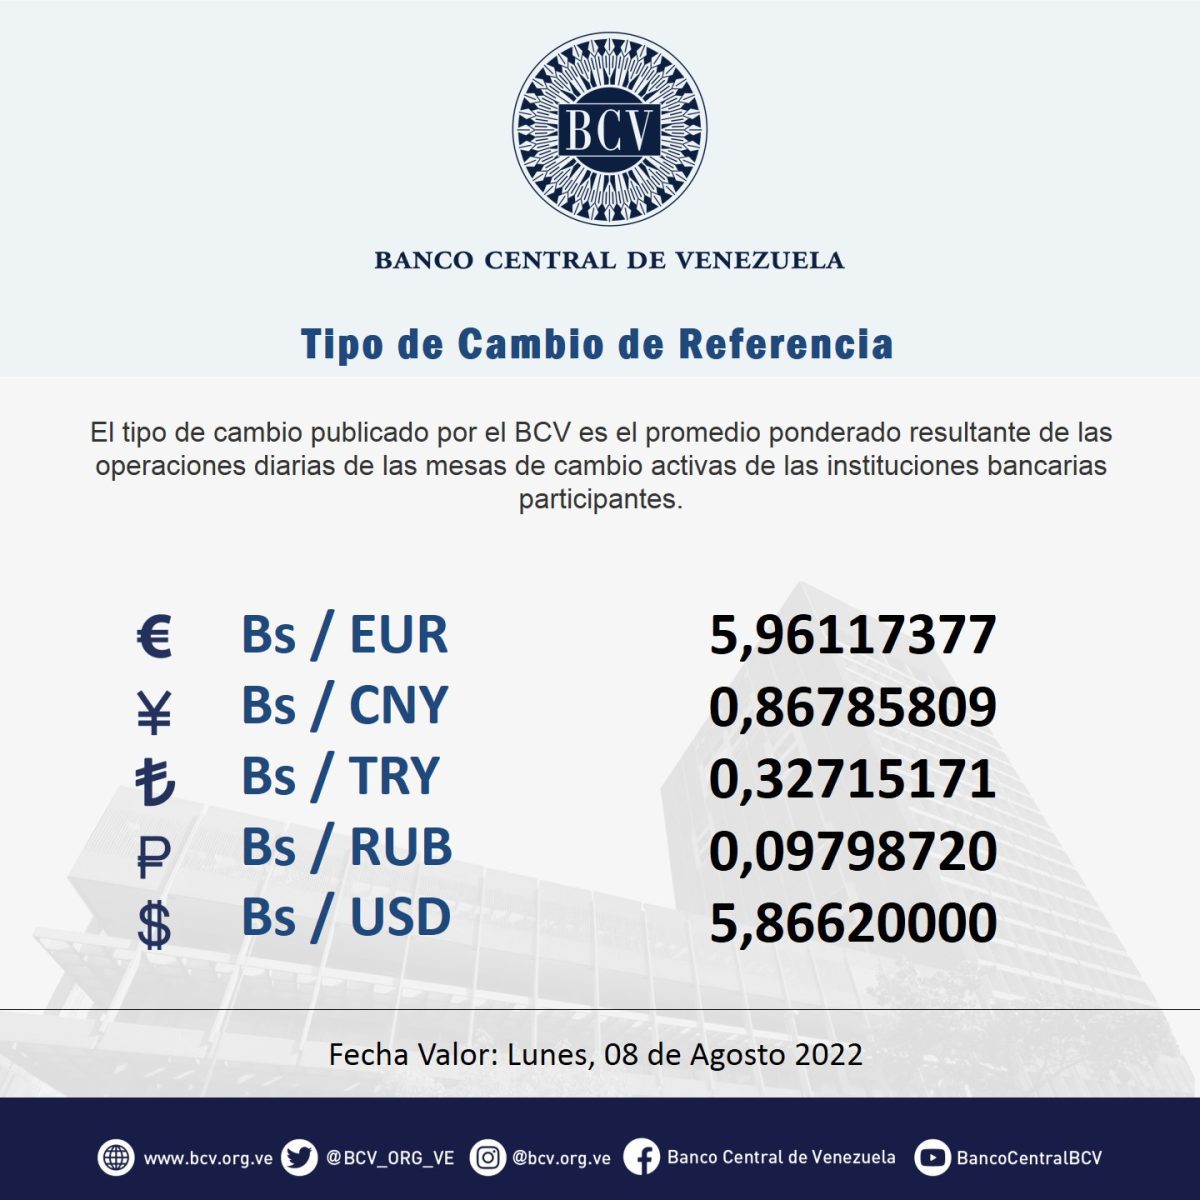 dolartoday en venezuela precio del dolar domingo 7 de agosto de 2022 laverdaddemonagas.com bcv777